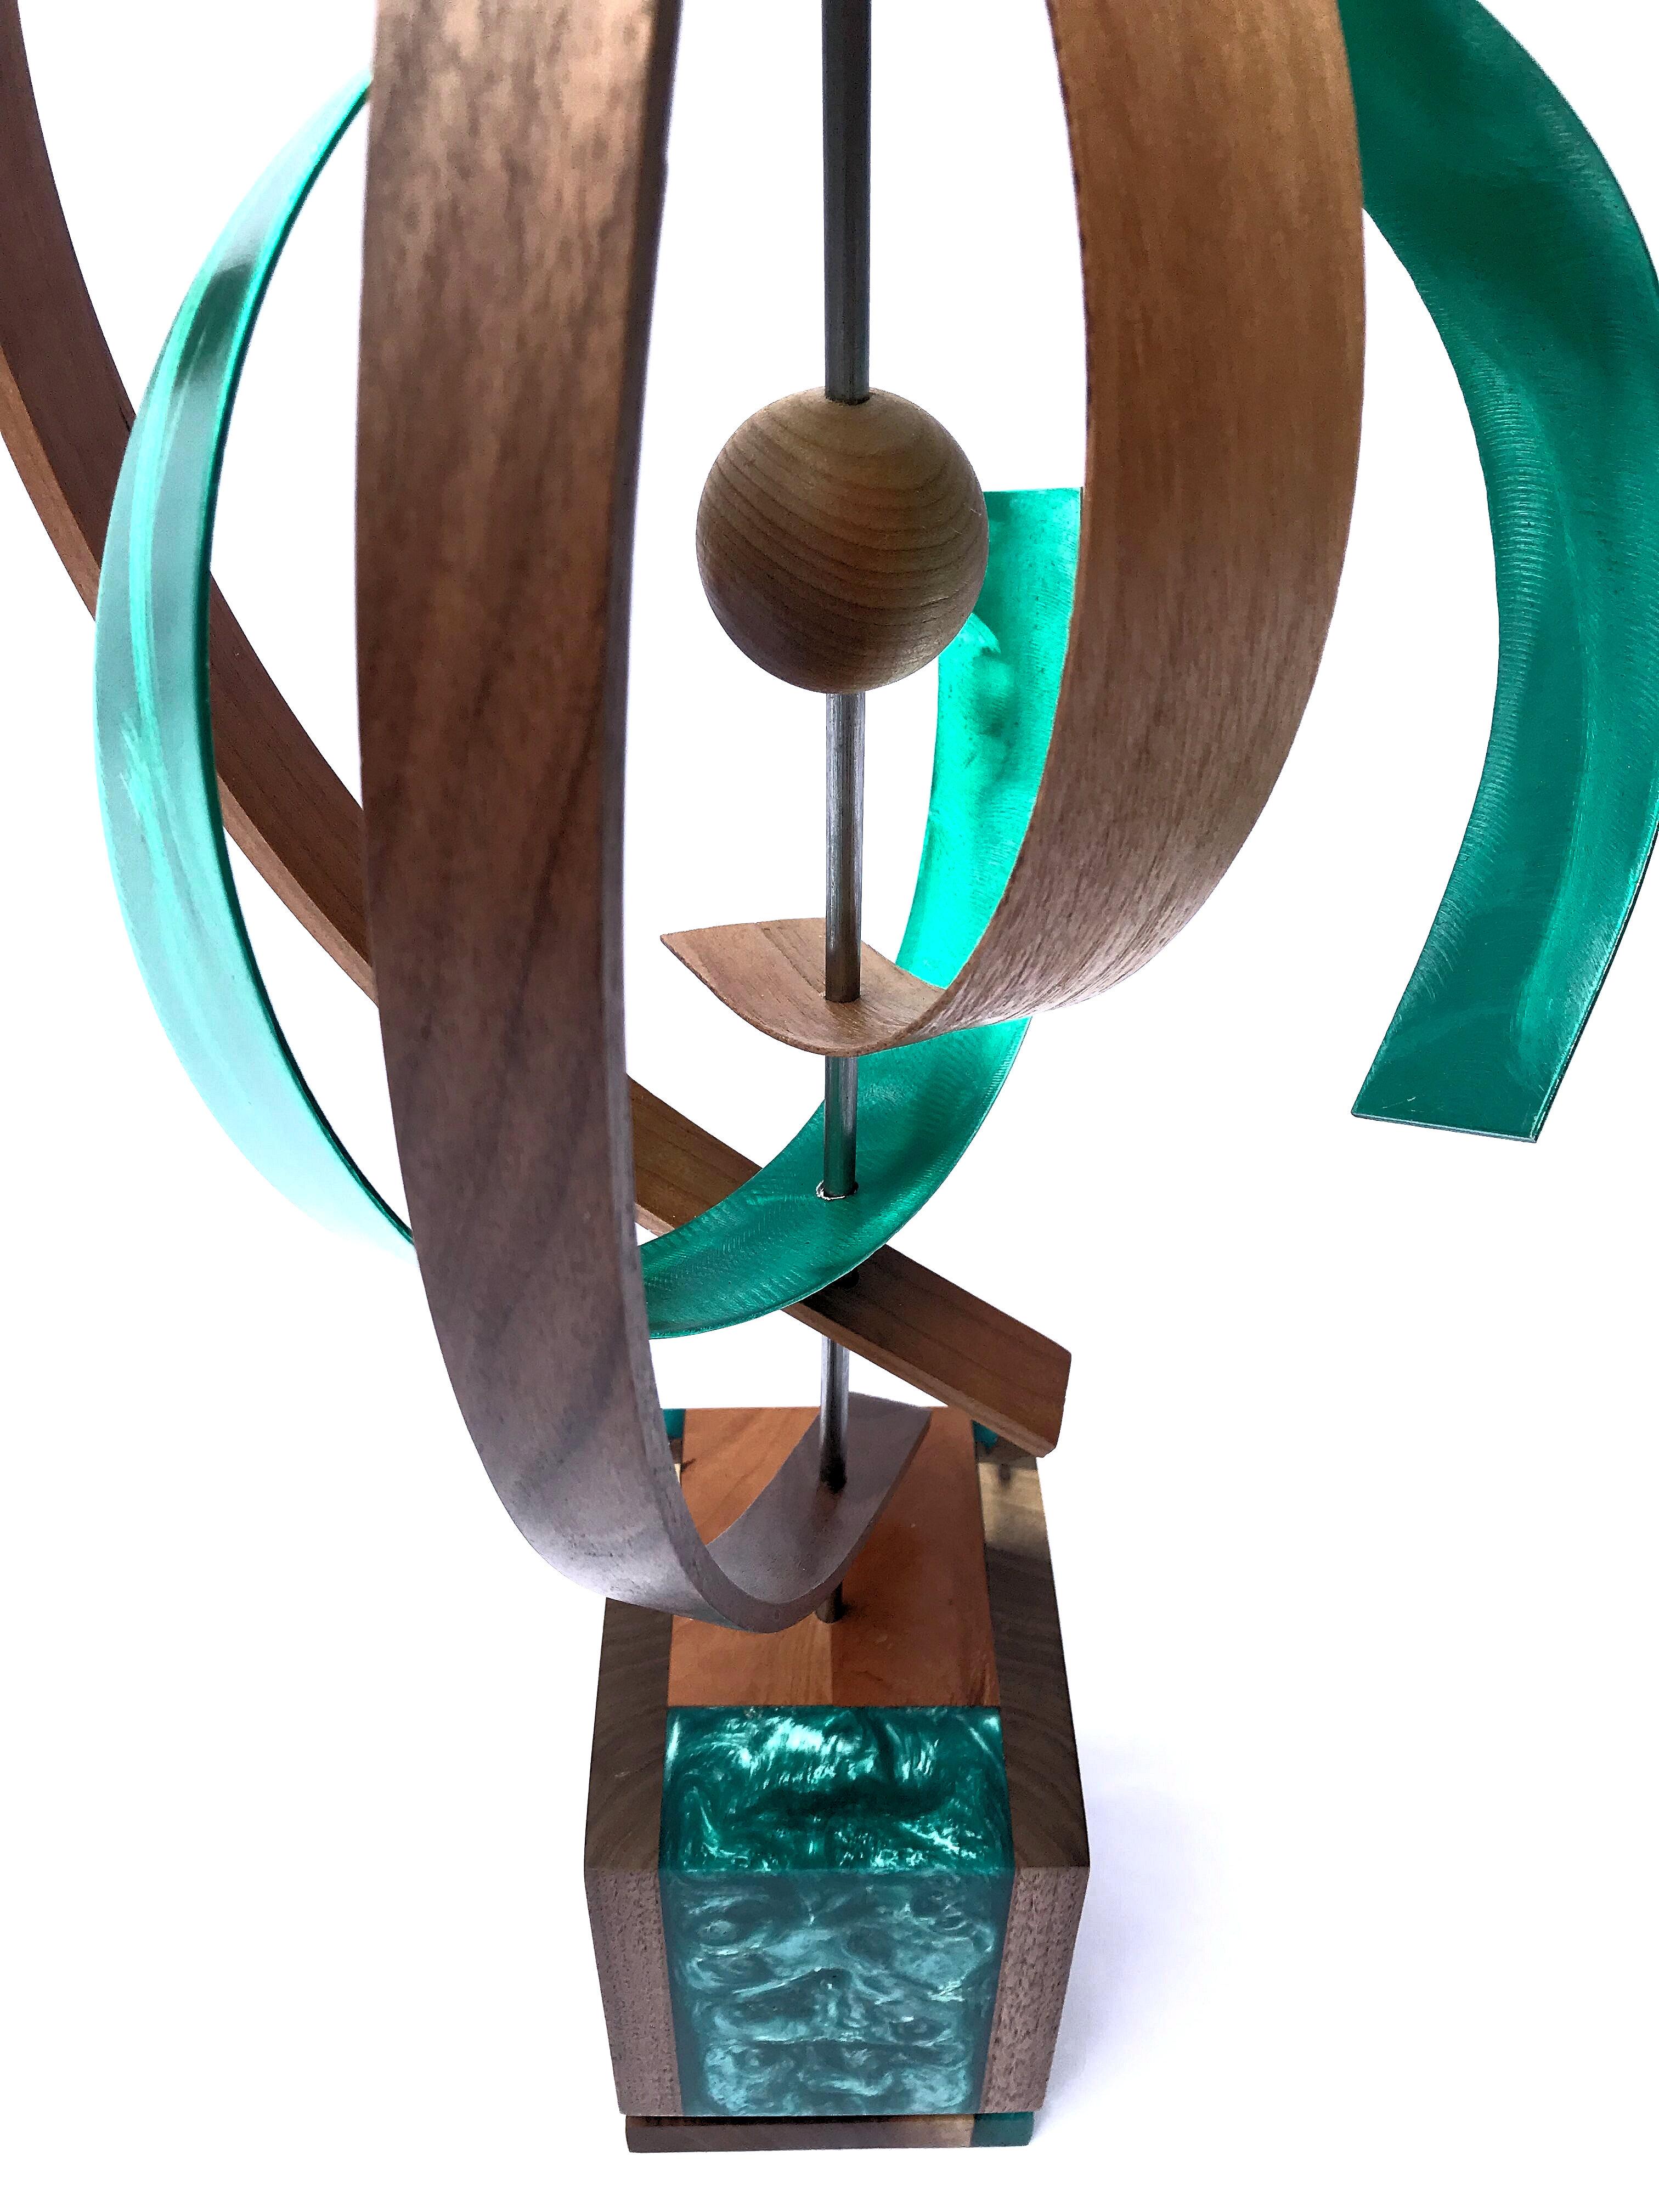 Jeff Linenkugel Abstract Sculpture - Modern Wood Metal Free-Standing Rotating Sculpture Original Contemporary Art 